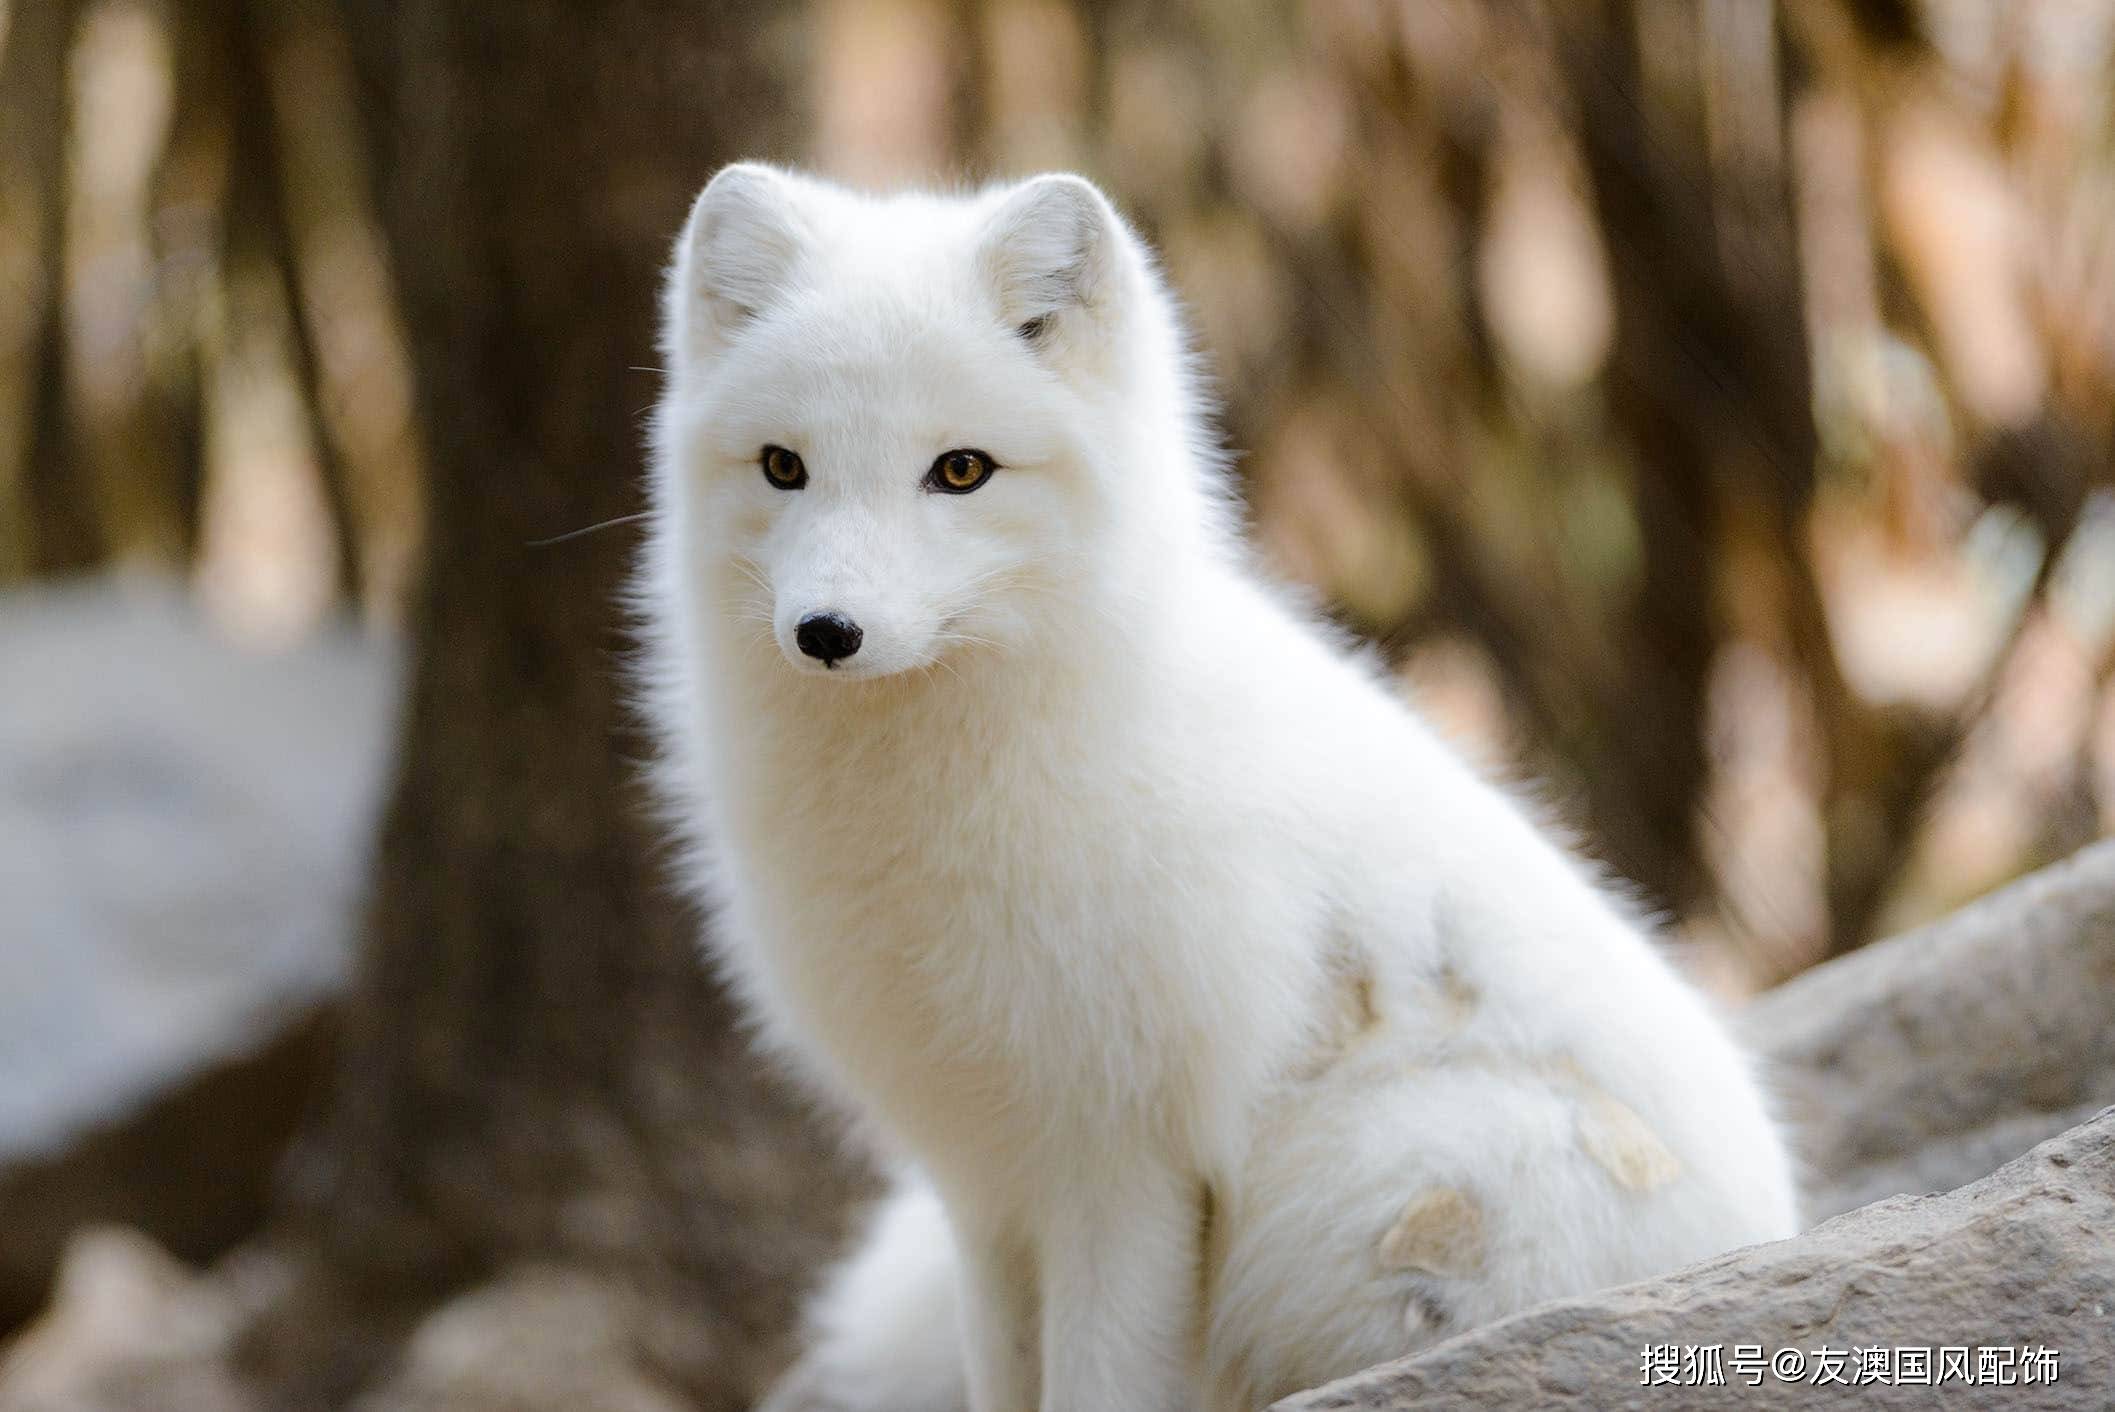 虽说狐狸精不好听但是这样手工刺绣的白狐真的很美